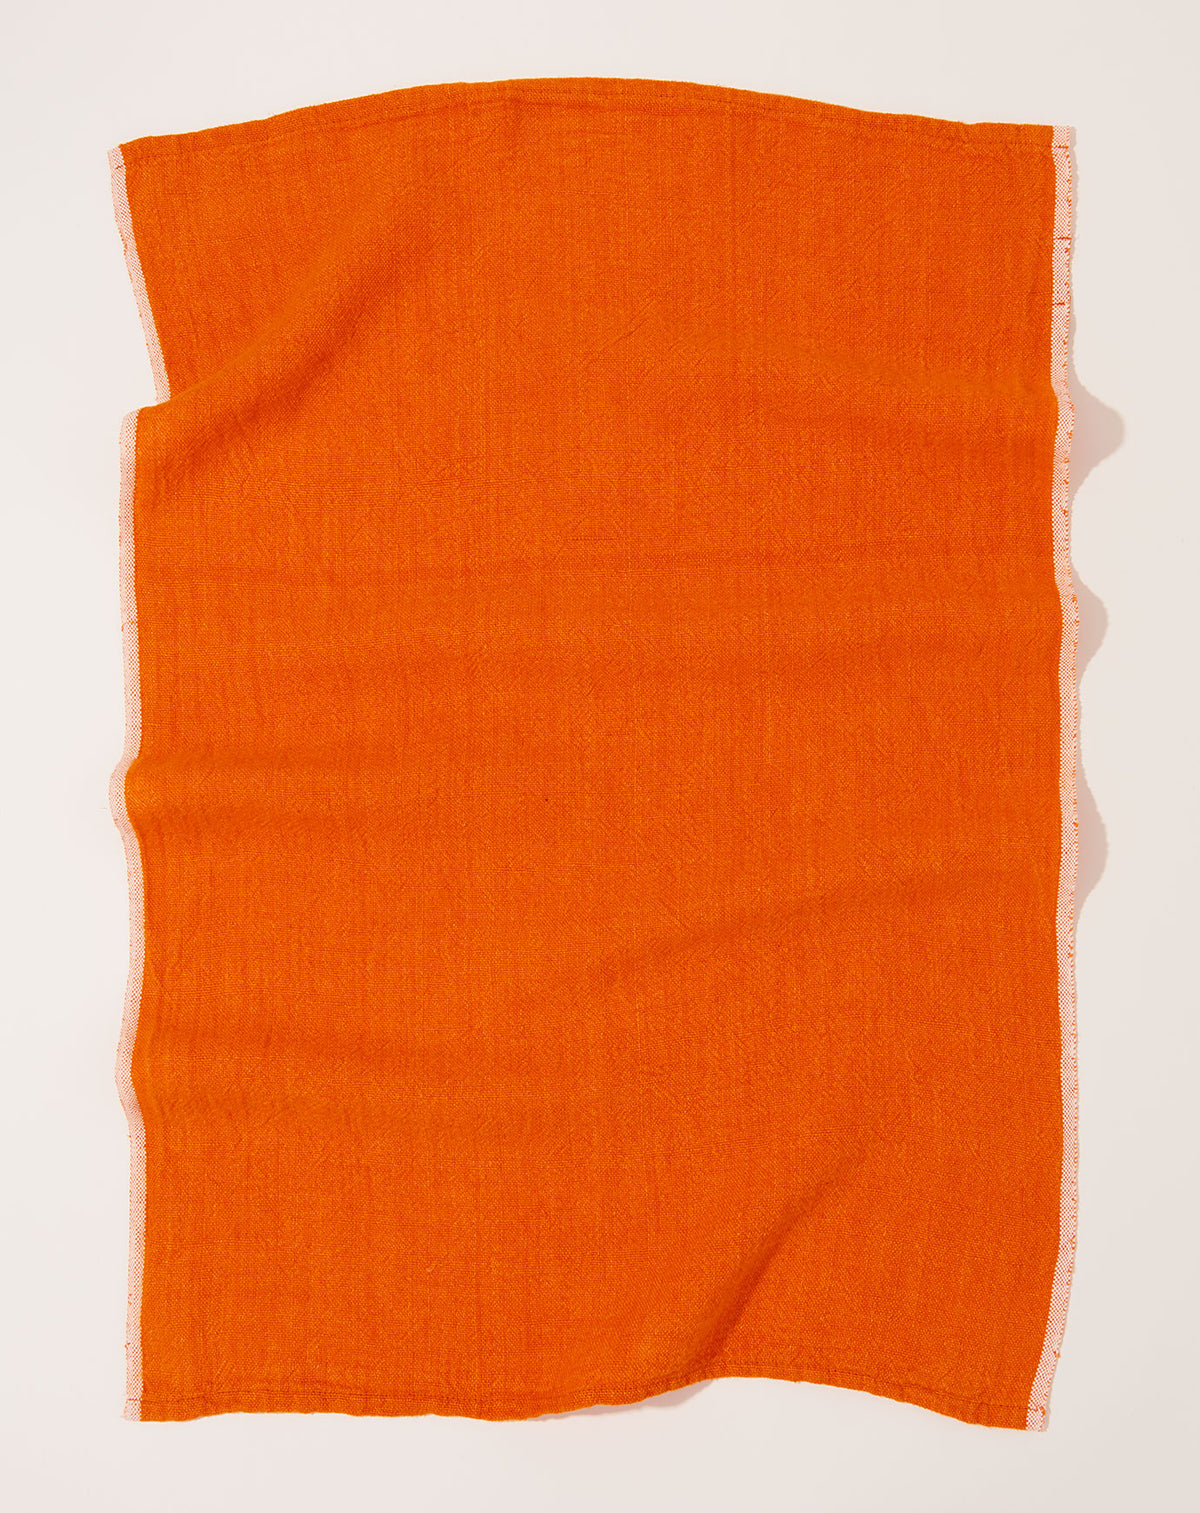 Chunky Linen Towels in Orange | Caravan | Covet + Lou | Covet + Lou